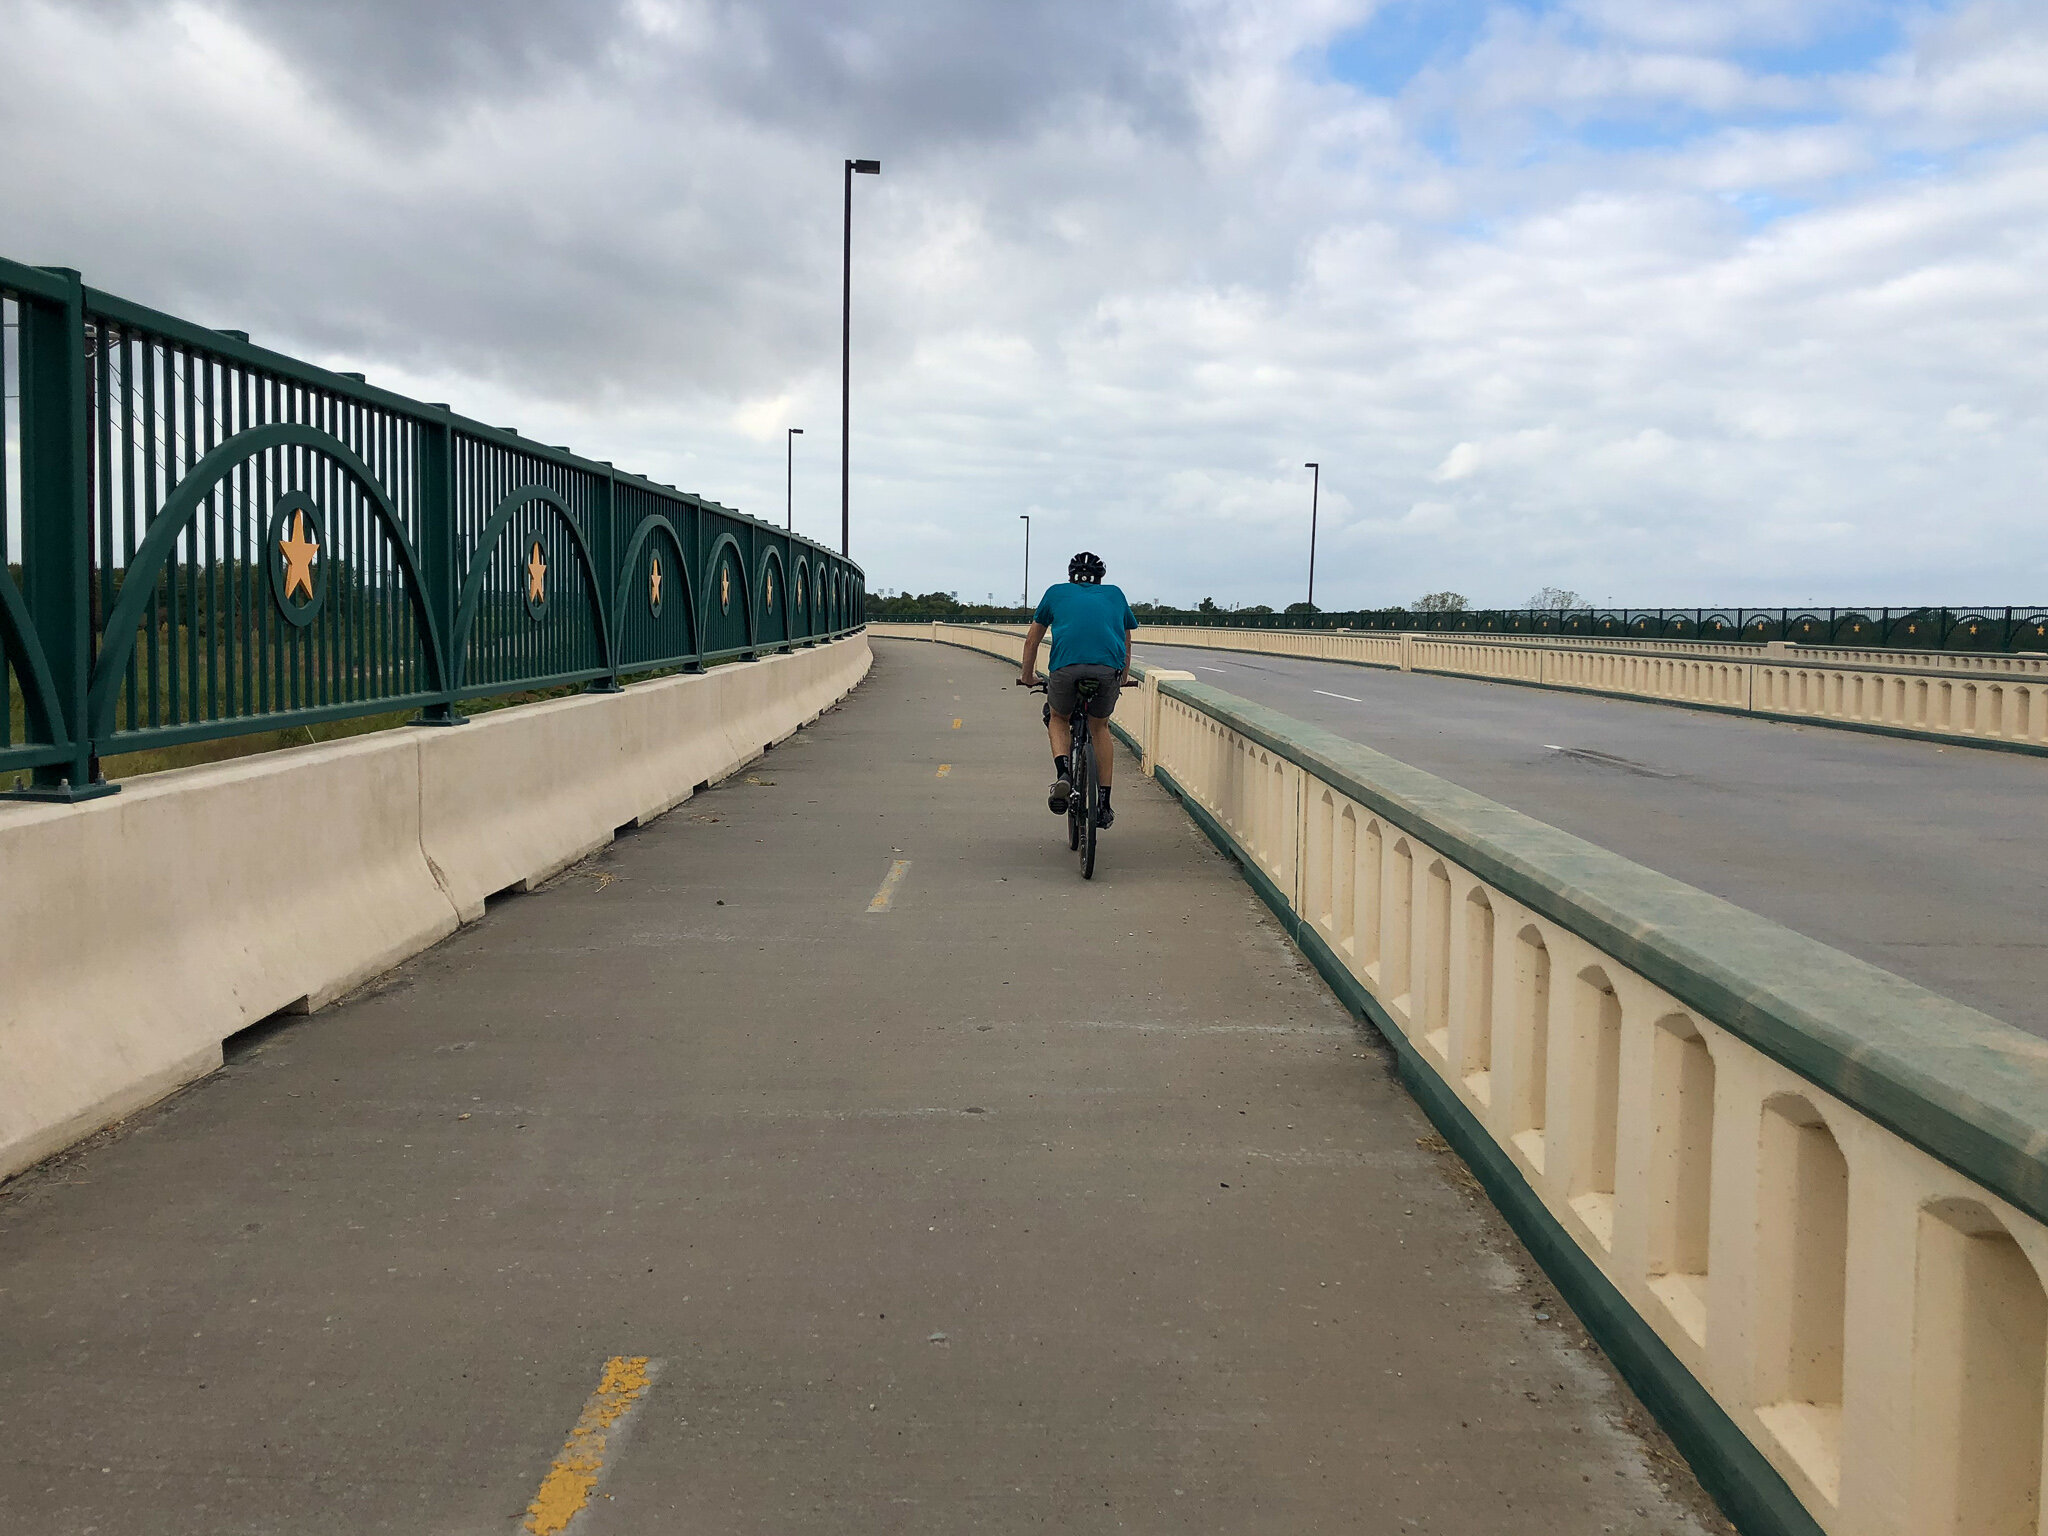  Protected bike lane along Hunter Ferrel Rd, Grand Prairie.  